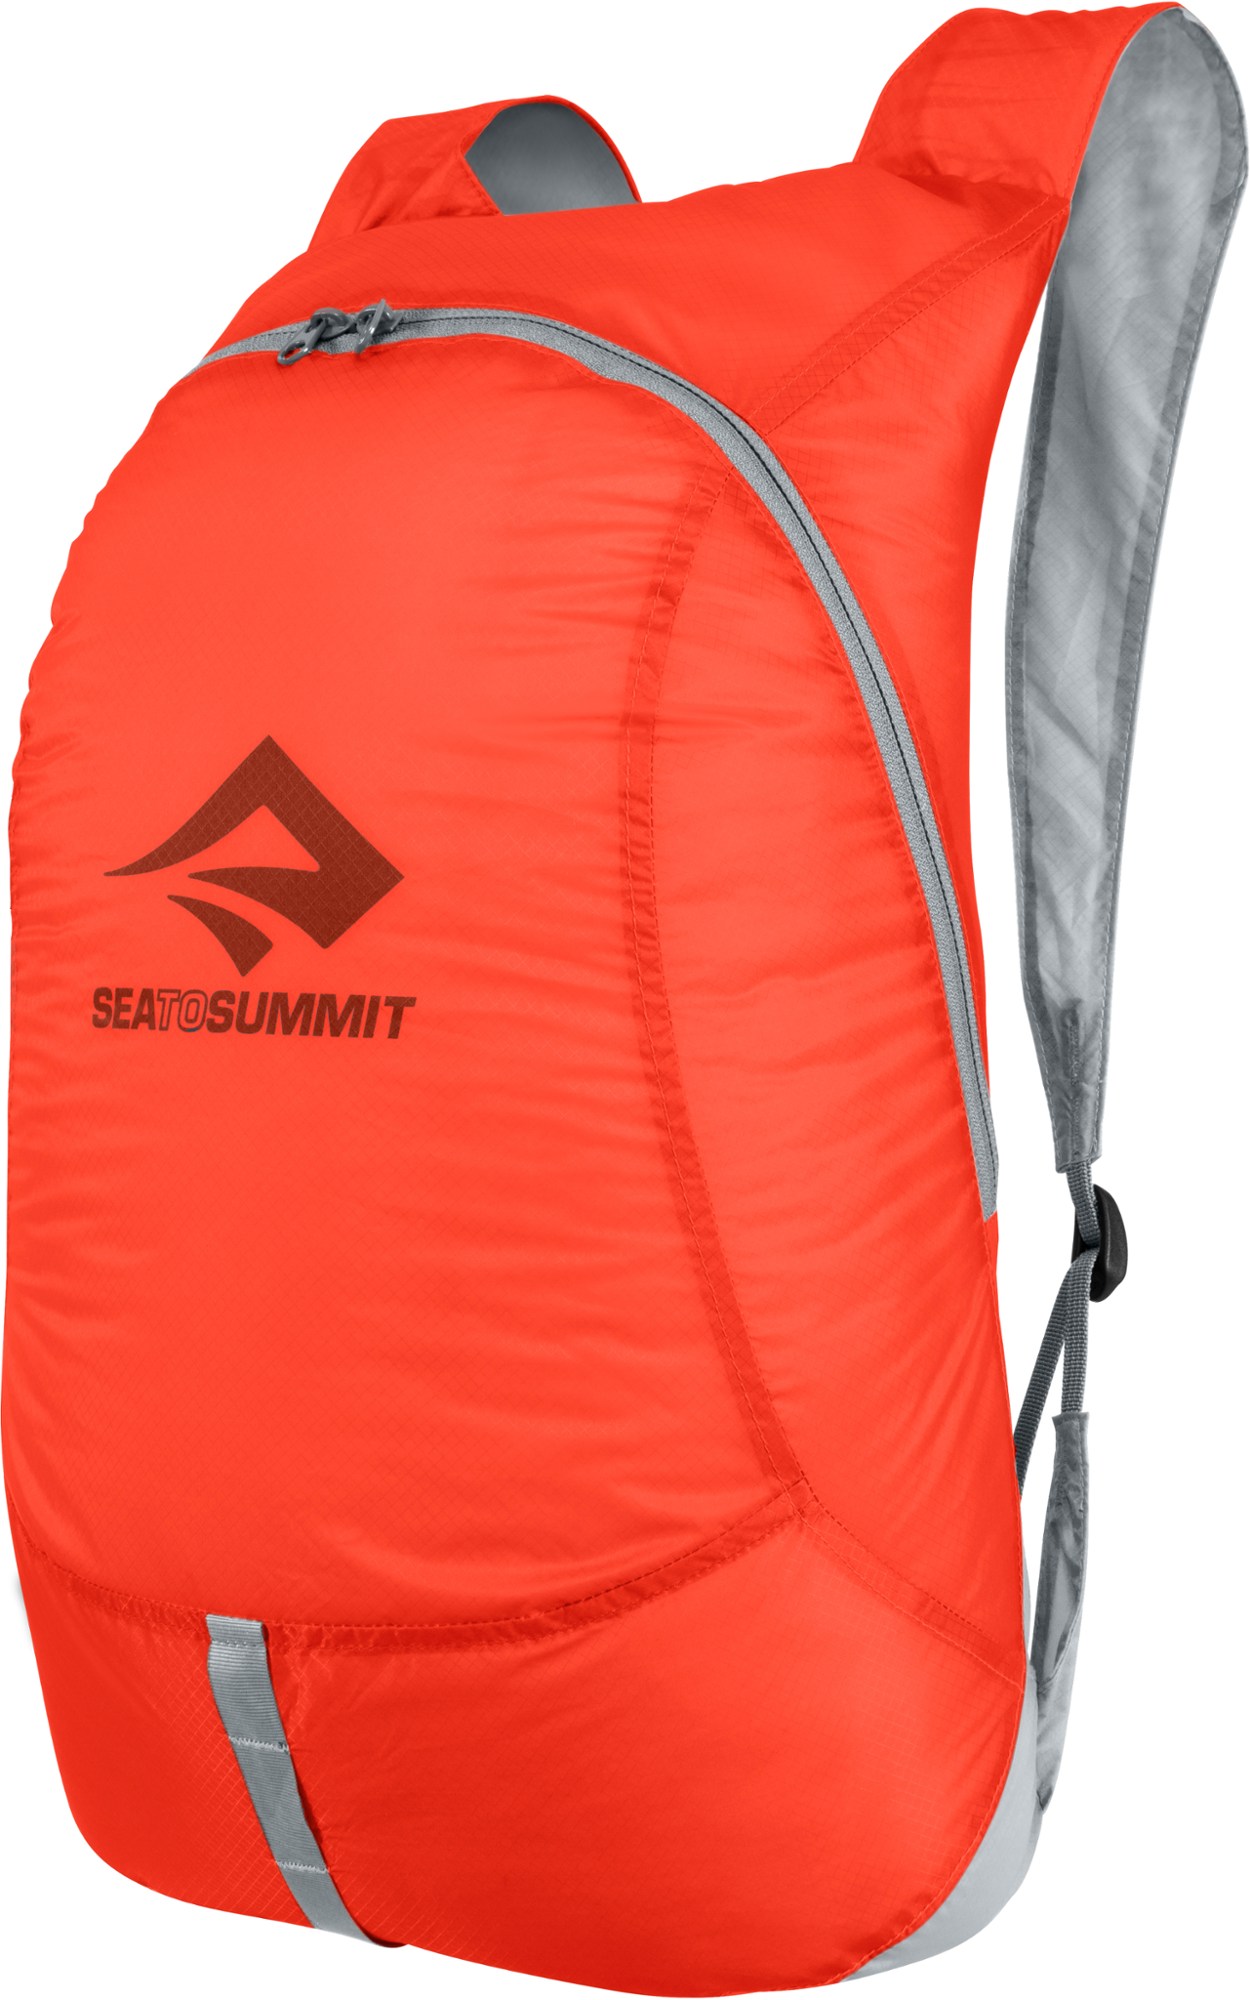 Дневной пакет Ultra-Sil Travel Sea to Summit, оранжевый рюкзак дорожная сумка сверхлегкая складная альпинистская сумка для мужчин уличный дорожный спортивный рюкзак для бега рюкзак органайзе